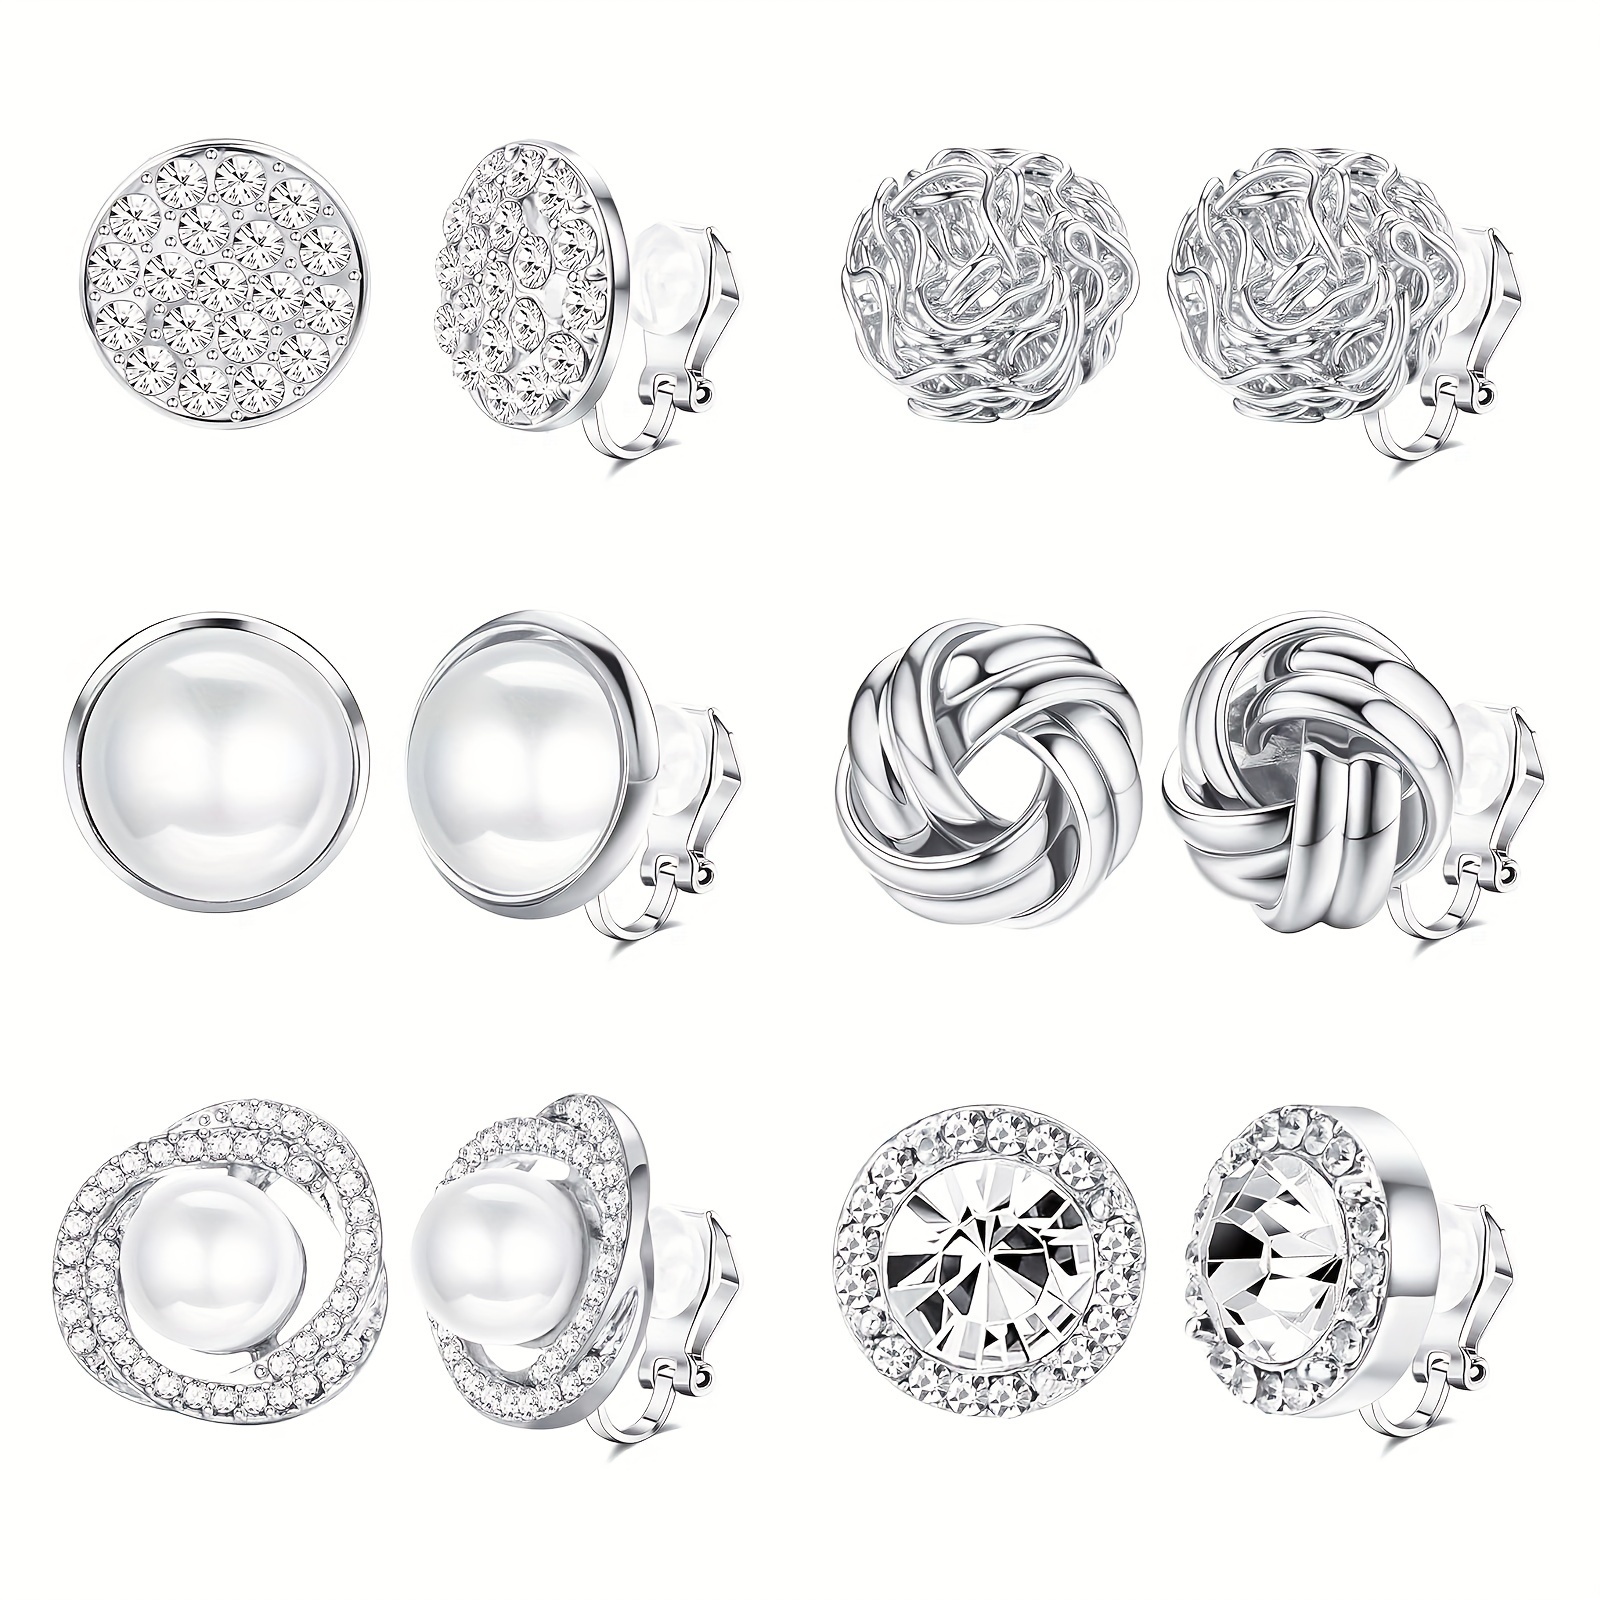 

6 Pairs Of Elegant Clip-on Earrings, Silvery-tone Faux Pearl & Zirconia Earrings, Non-pierced Ear Jewelry, Party Decor